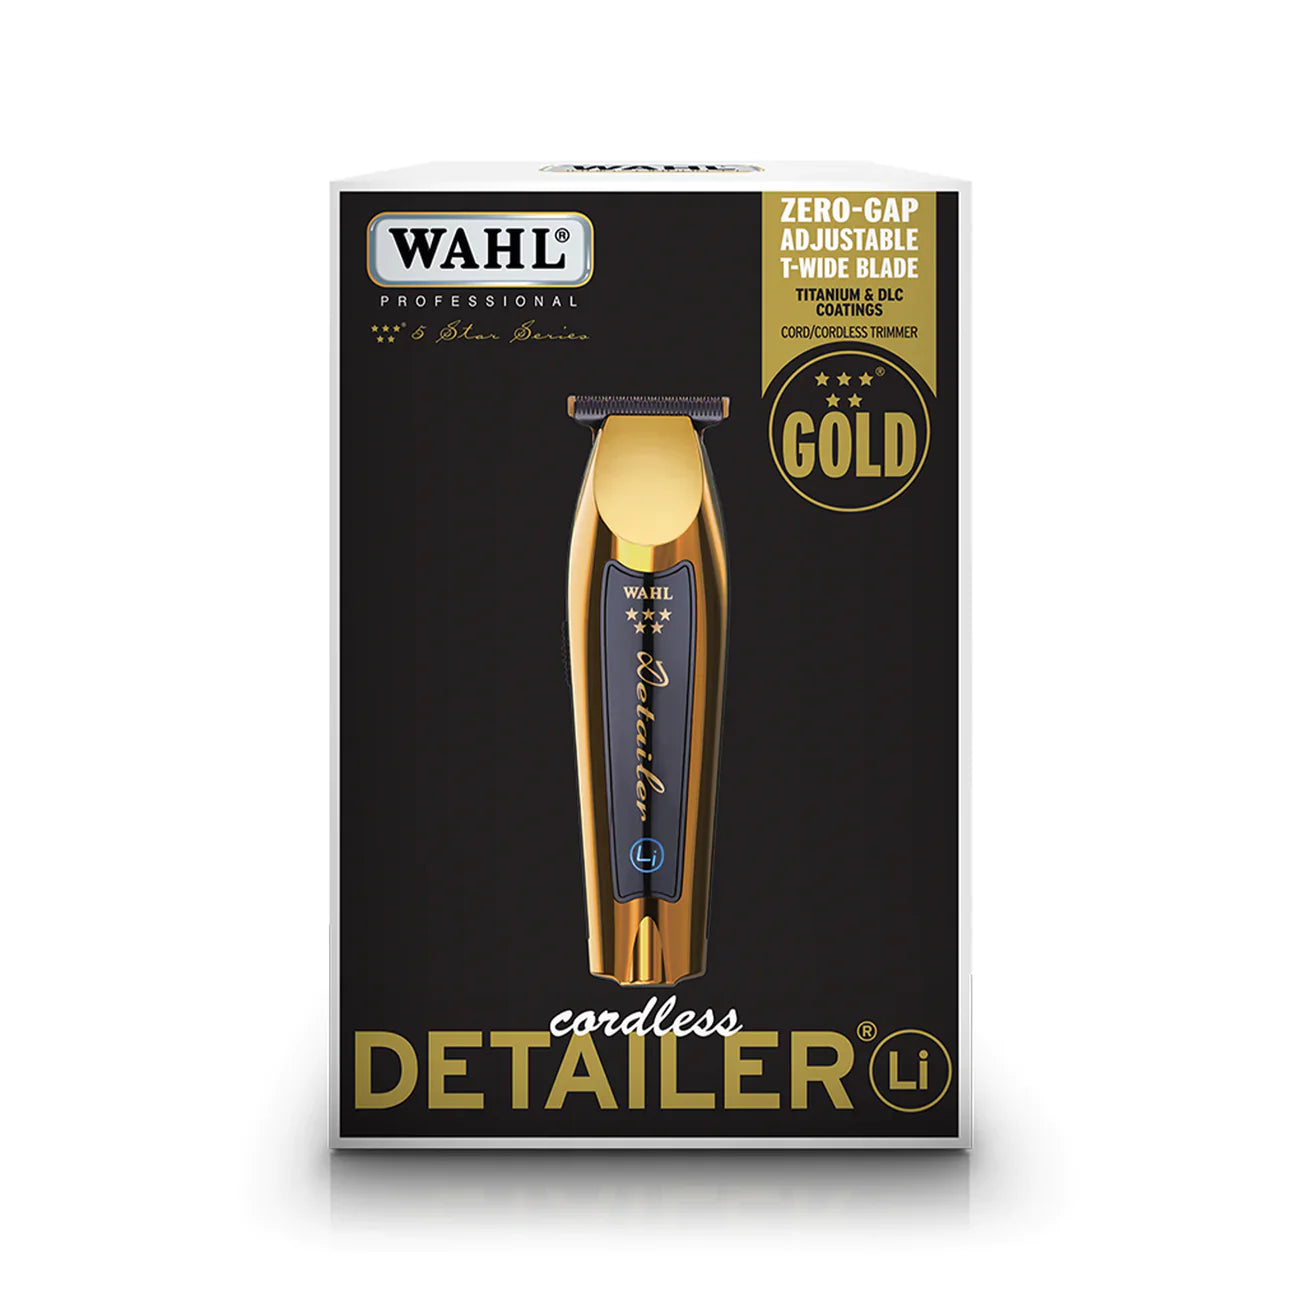 WAHL Gold Detailer Li 3023835 Trimmer